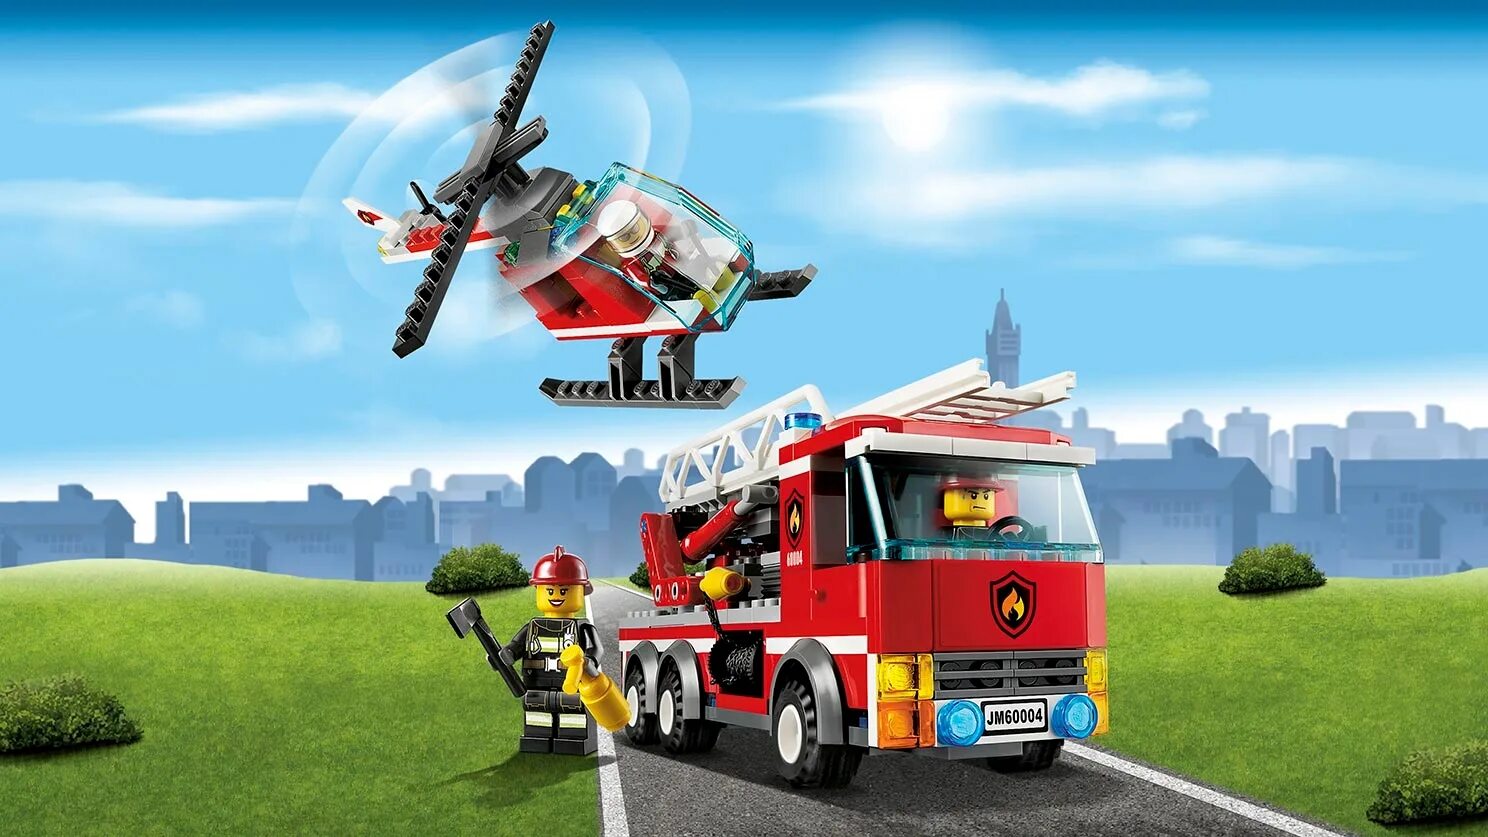 LEGO City 60004. Лего Сити 60004. LEGO City 60004 пожарная часть. LEGO 60004. Сити пожарная